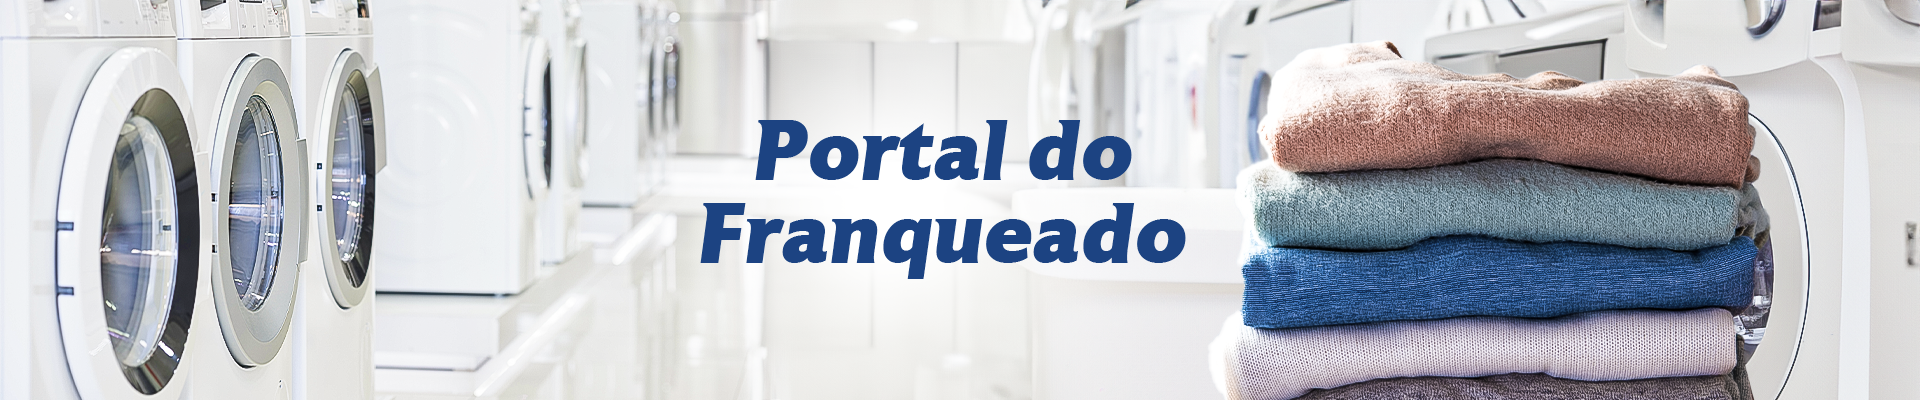 Banner Portal do franqueado